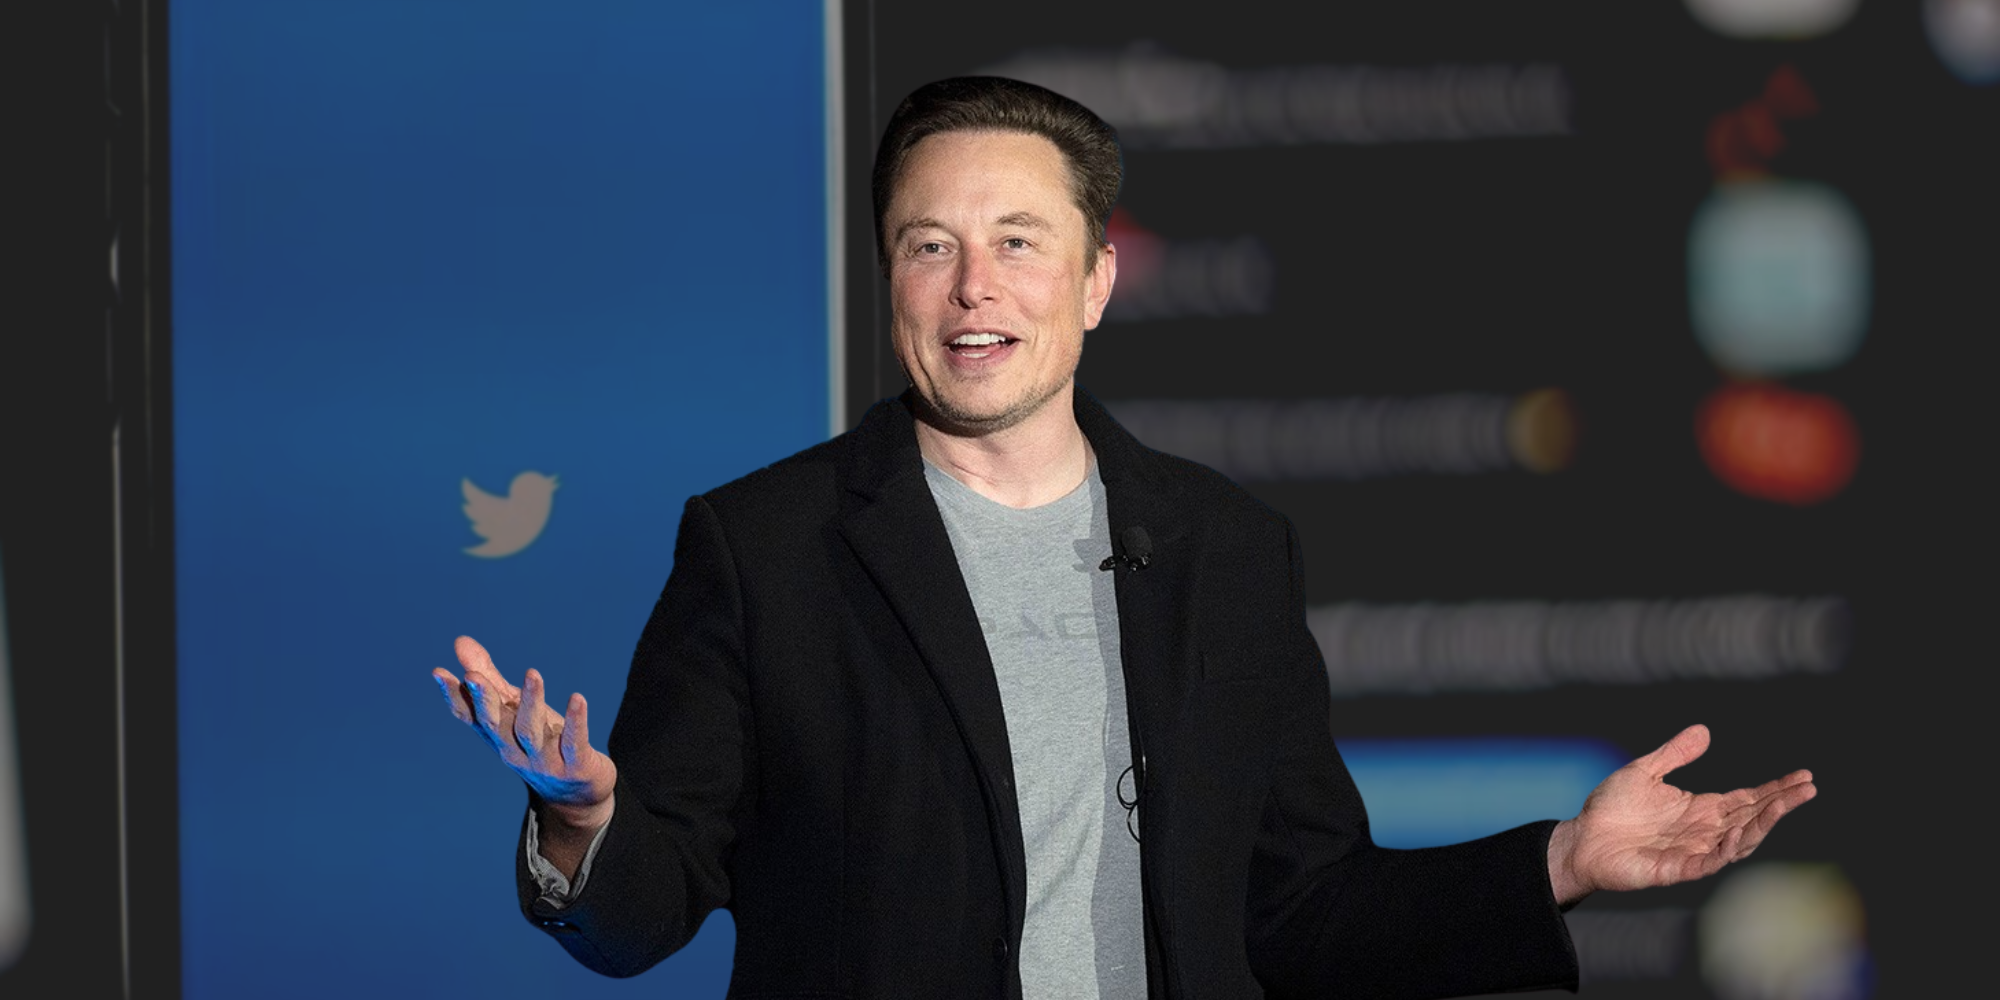 Elon Musk takes over Twitter